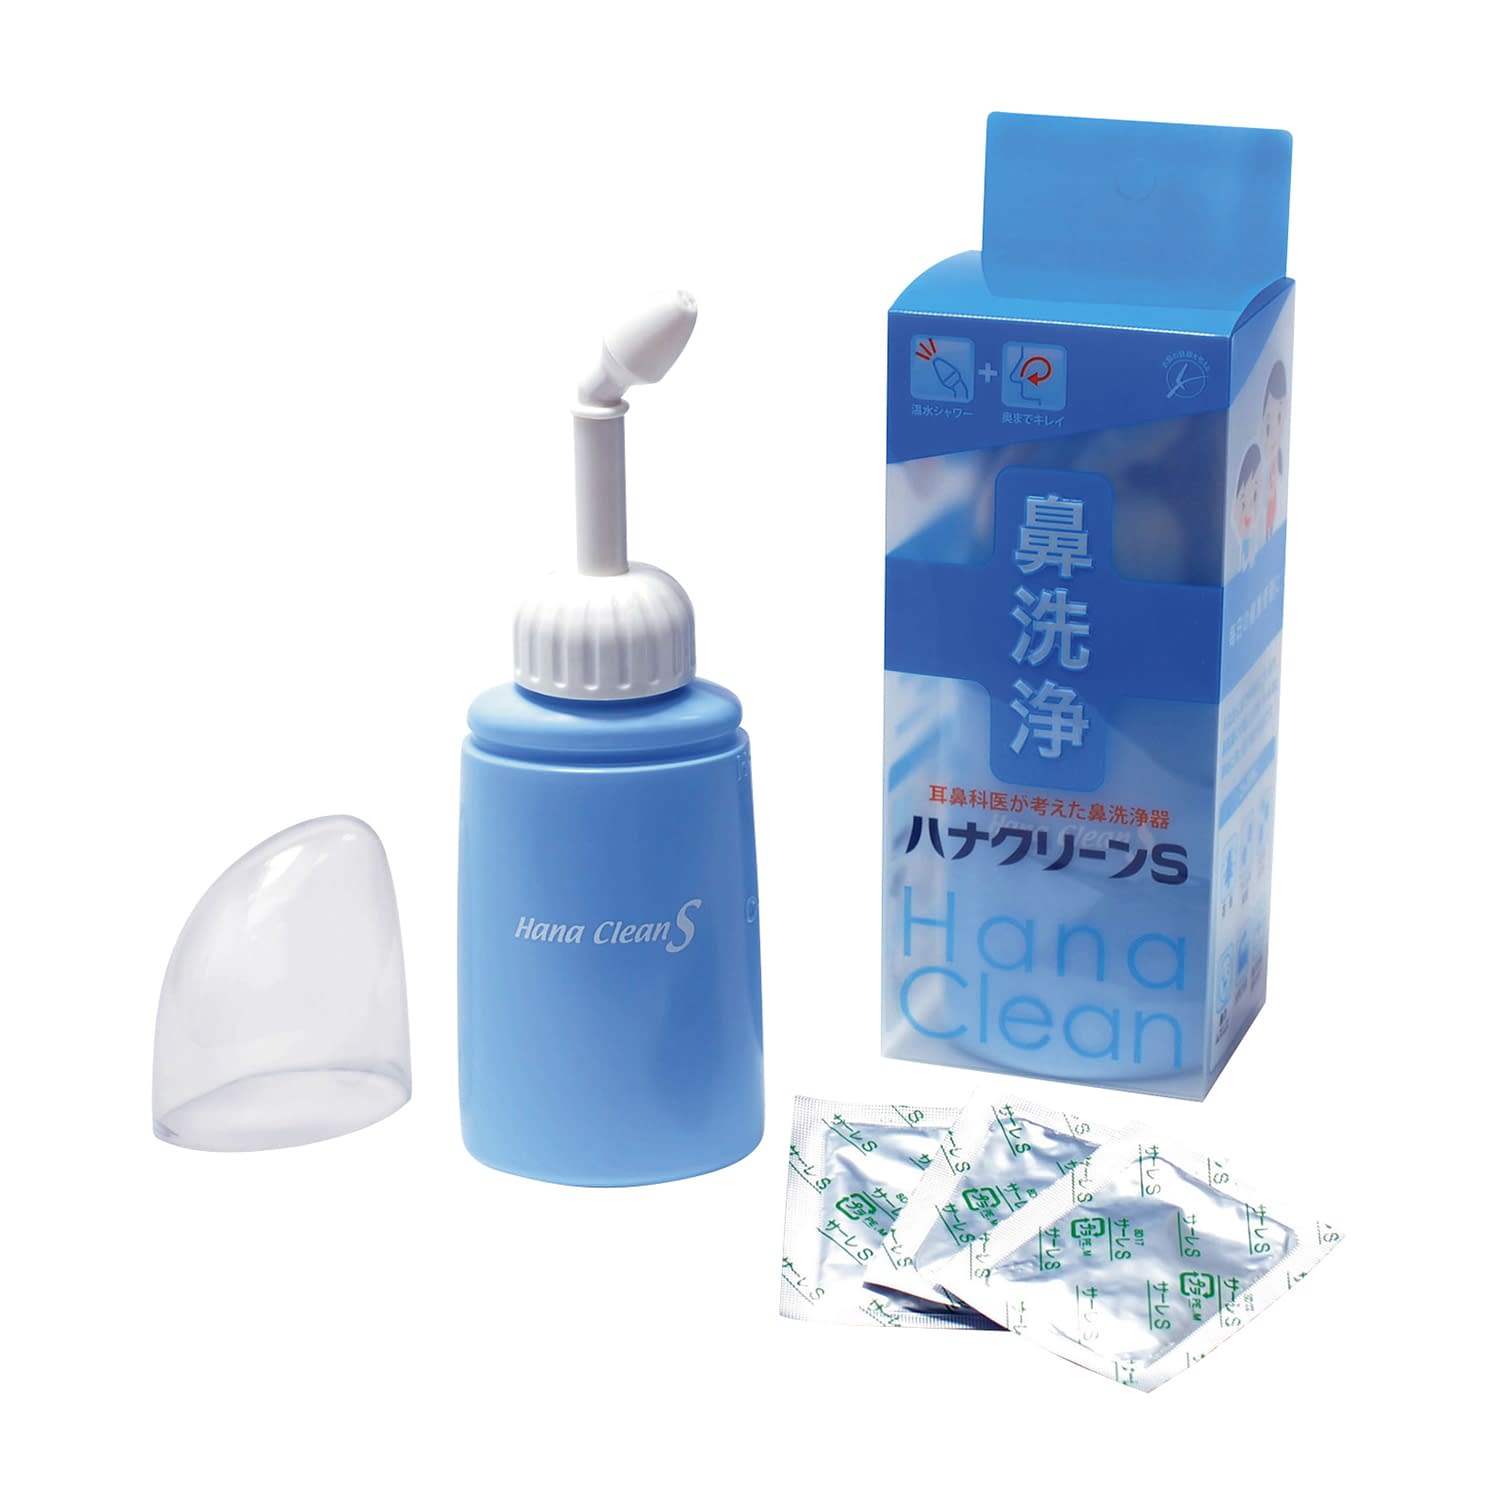 ハナクリーン 鼻洗浄器 - www.stedile.com.br